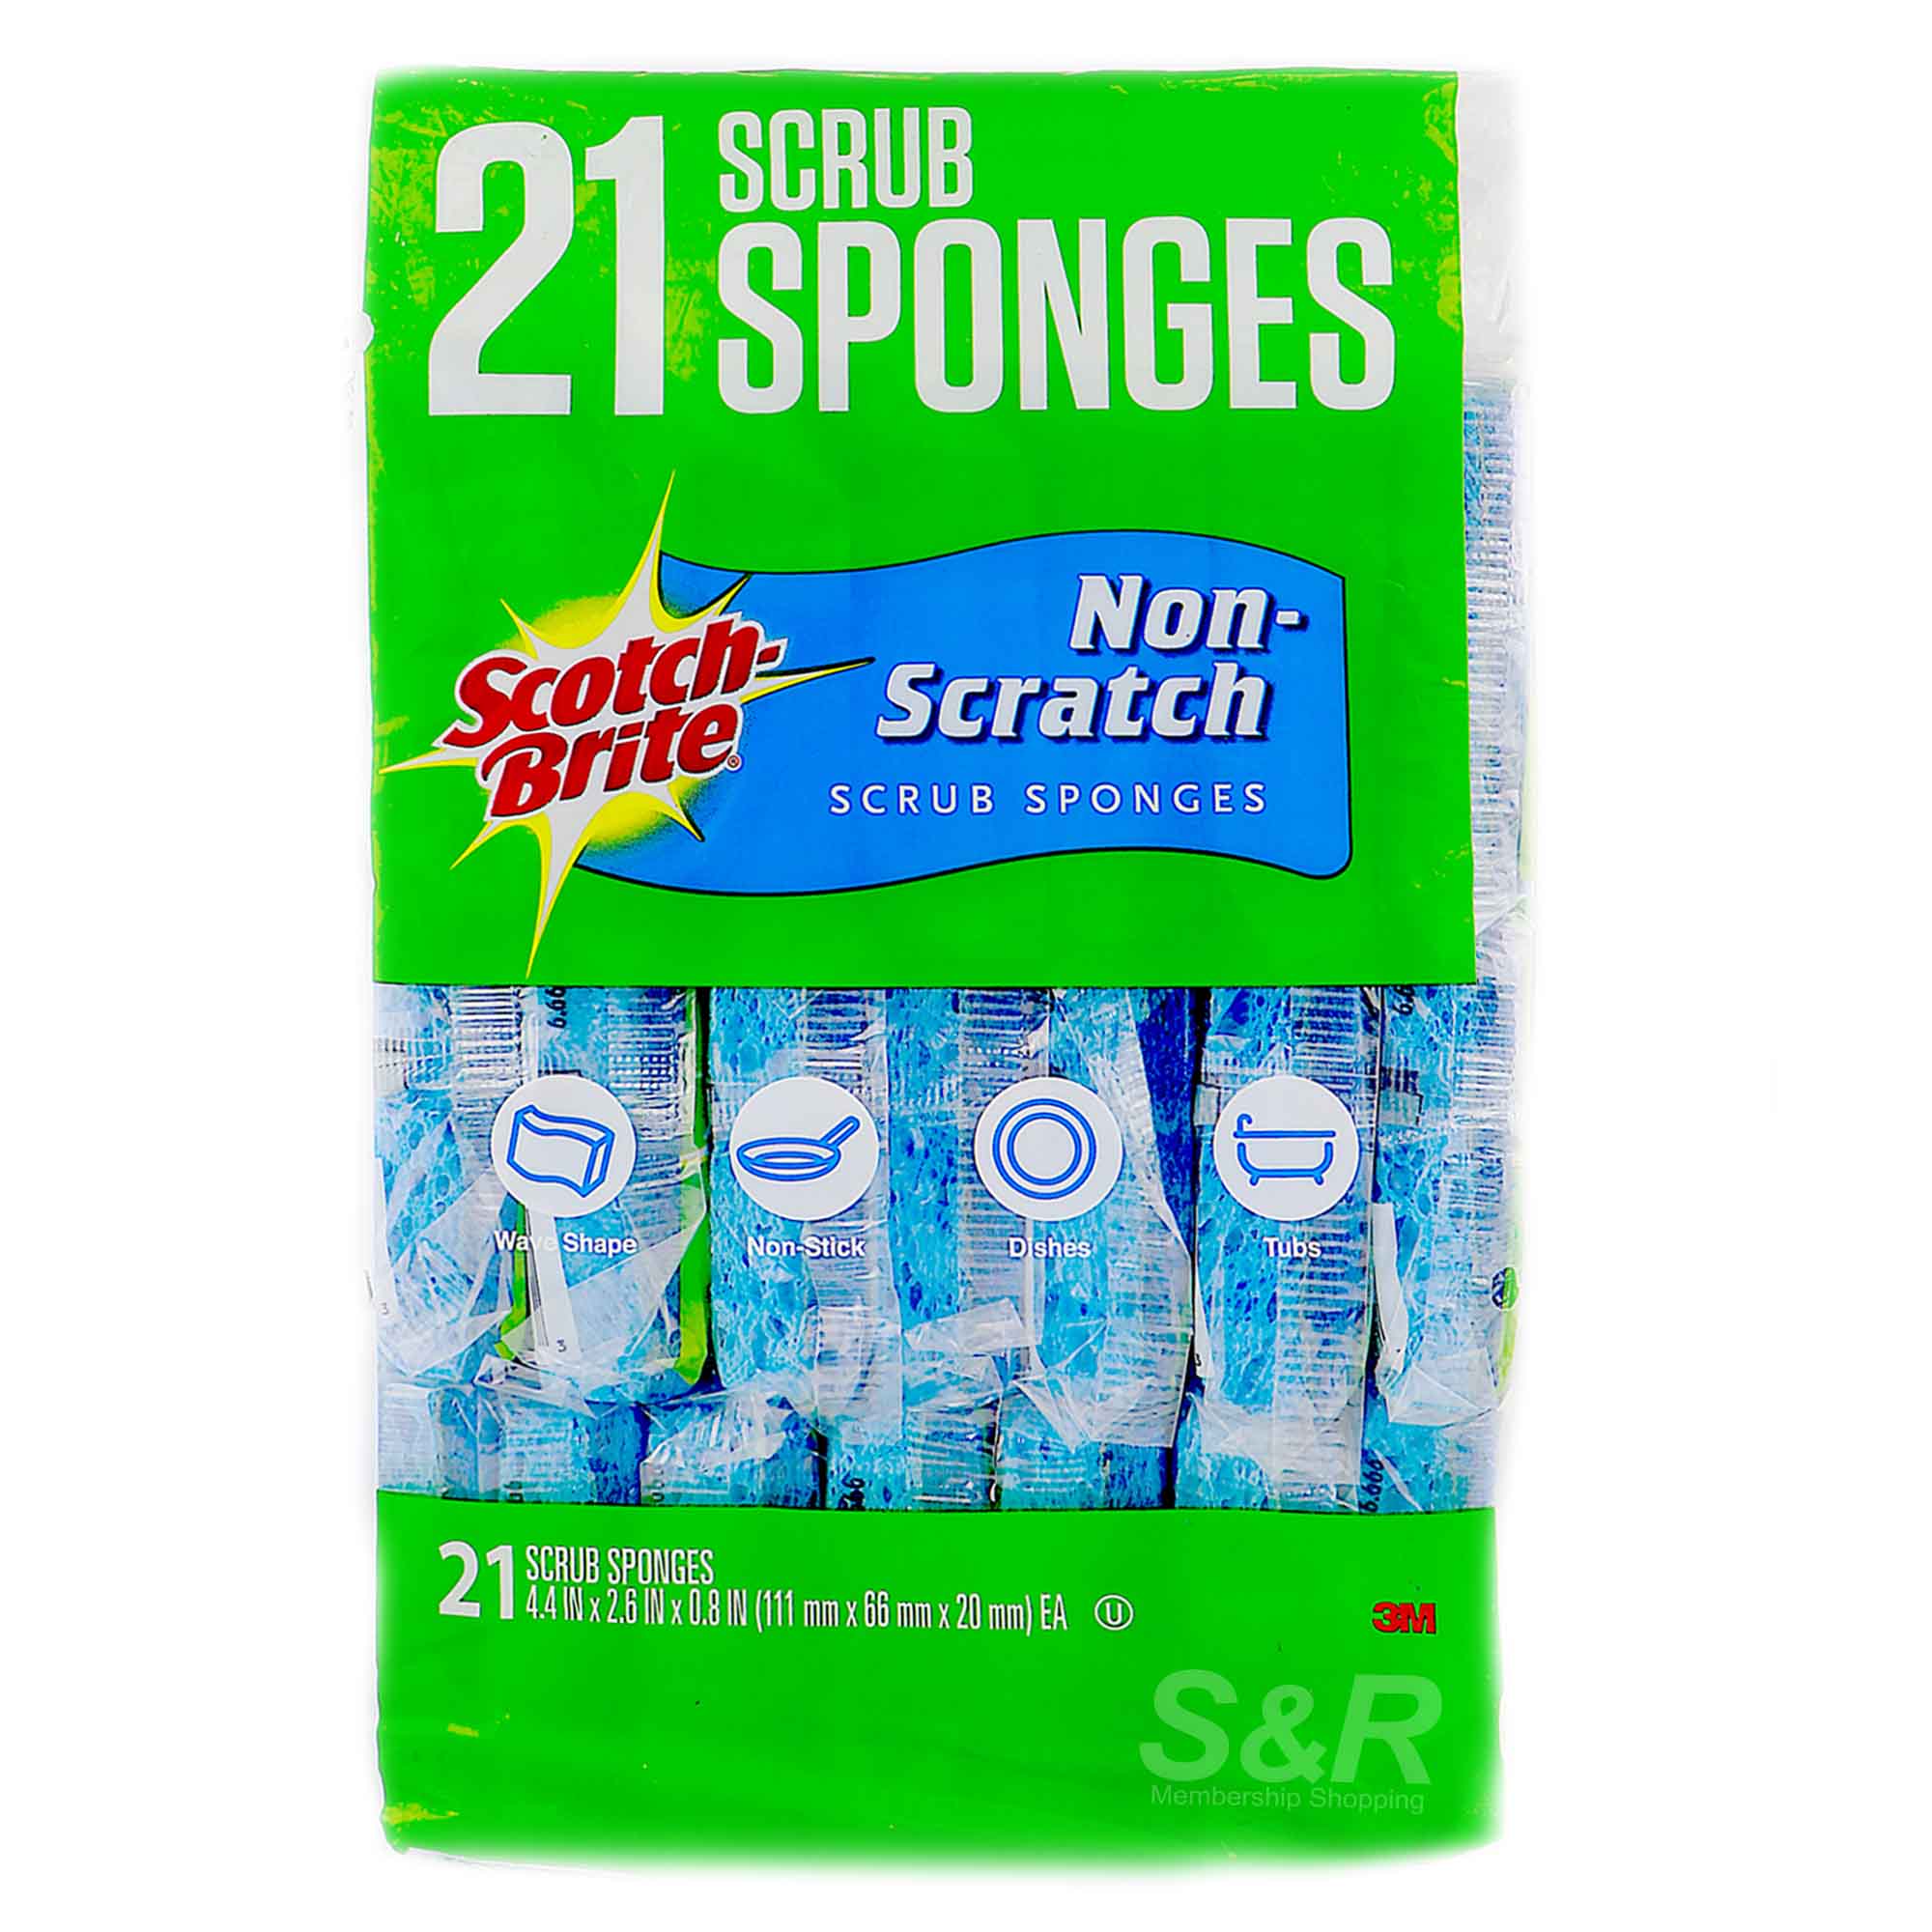 Scotch-Brite Non-Scratch Scrub Sponges 21pcs